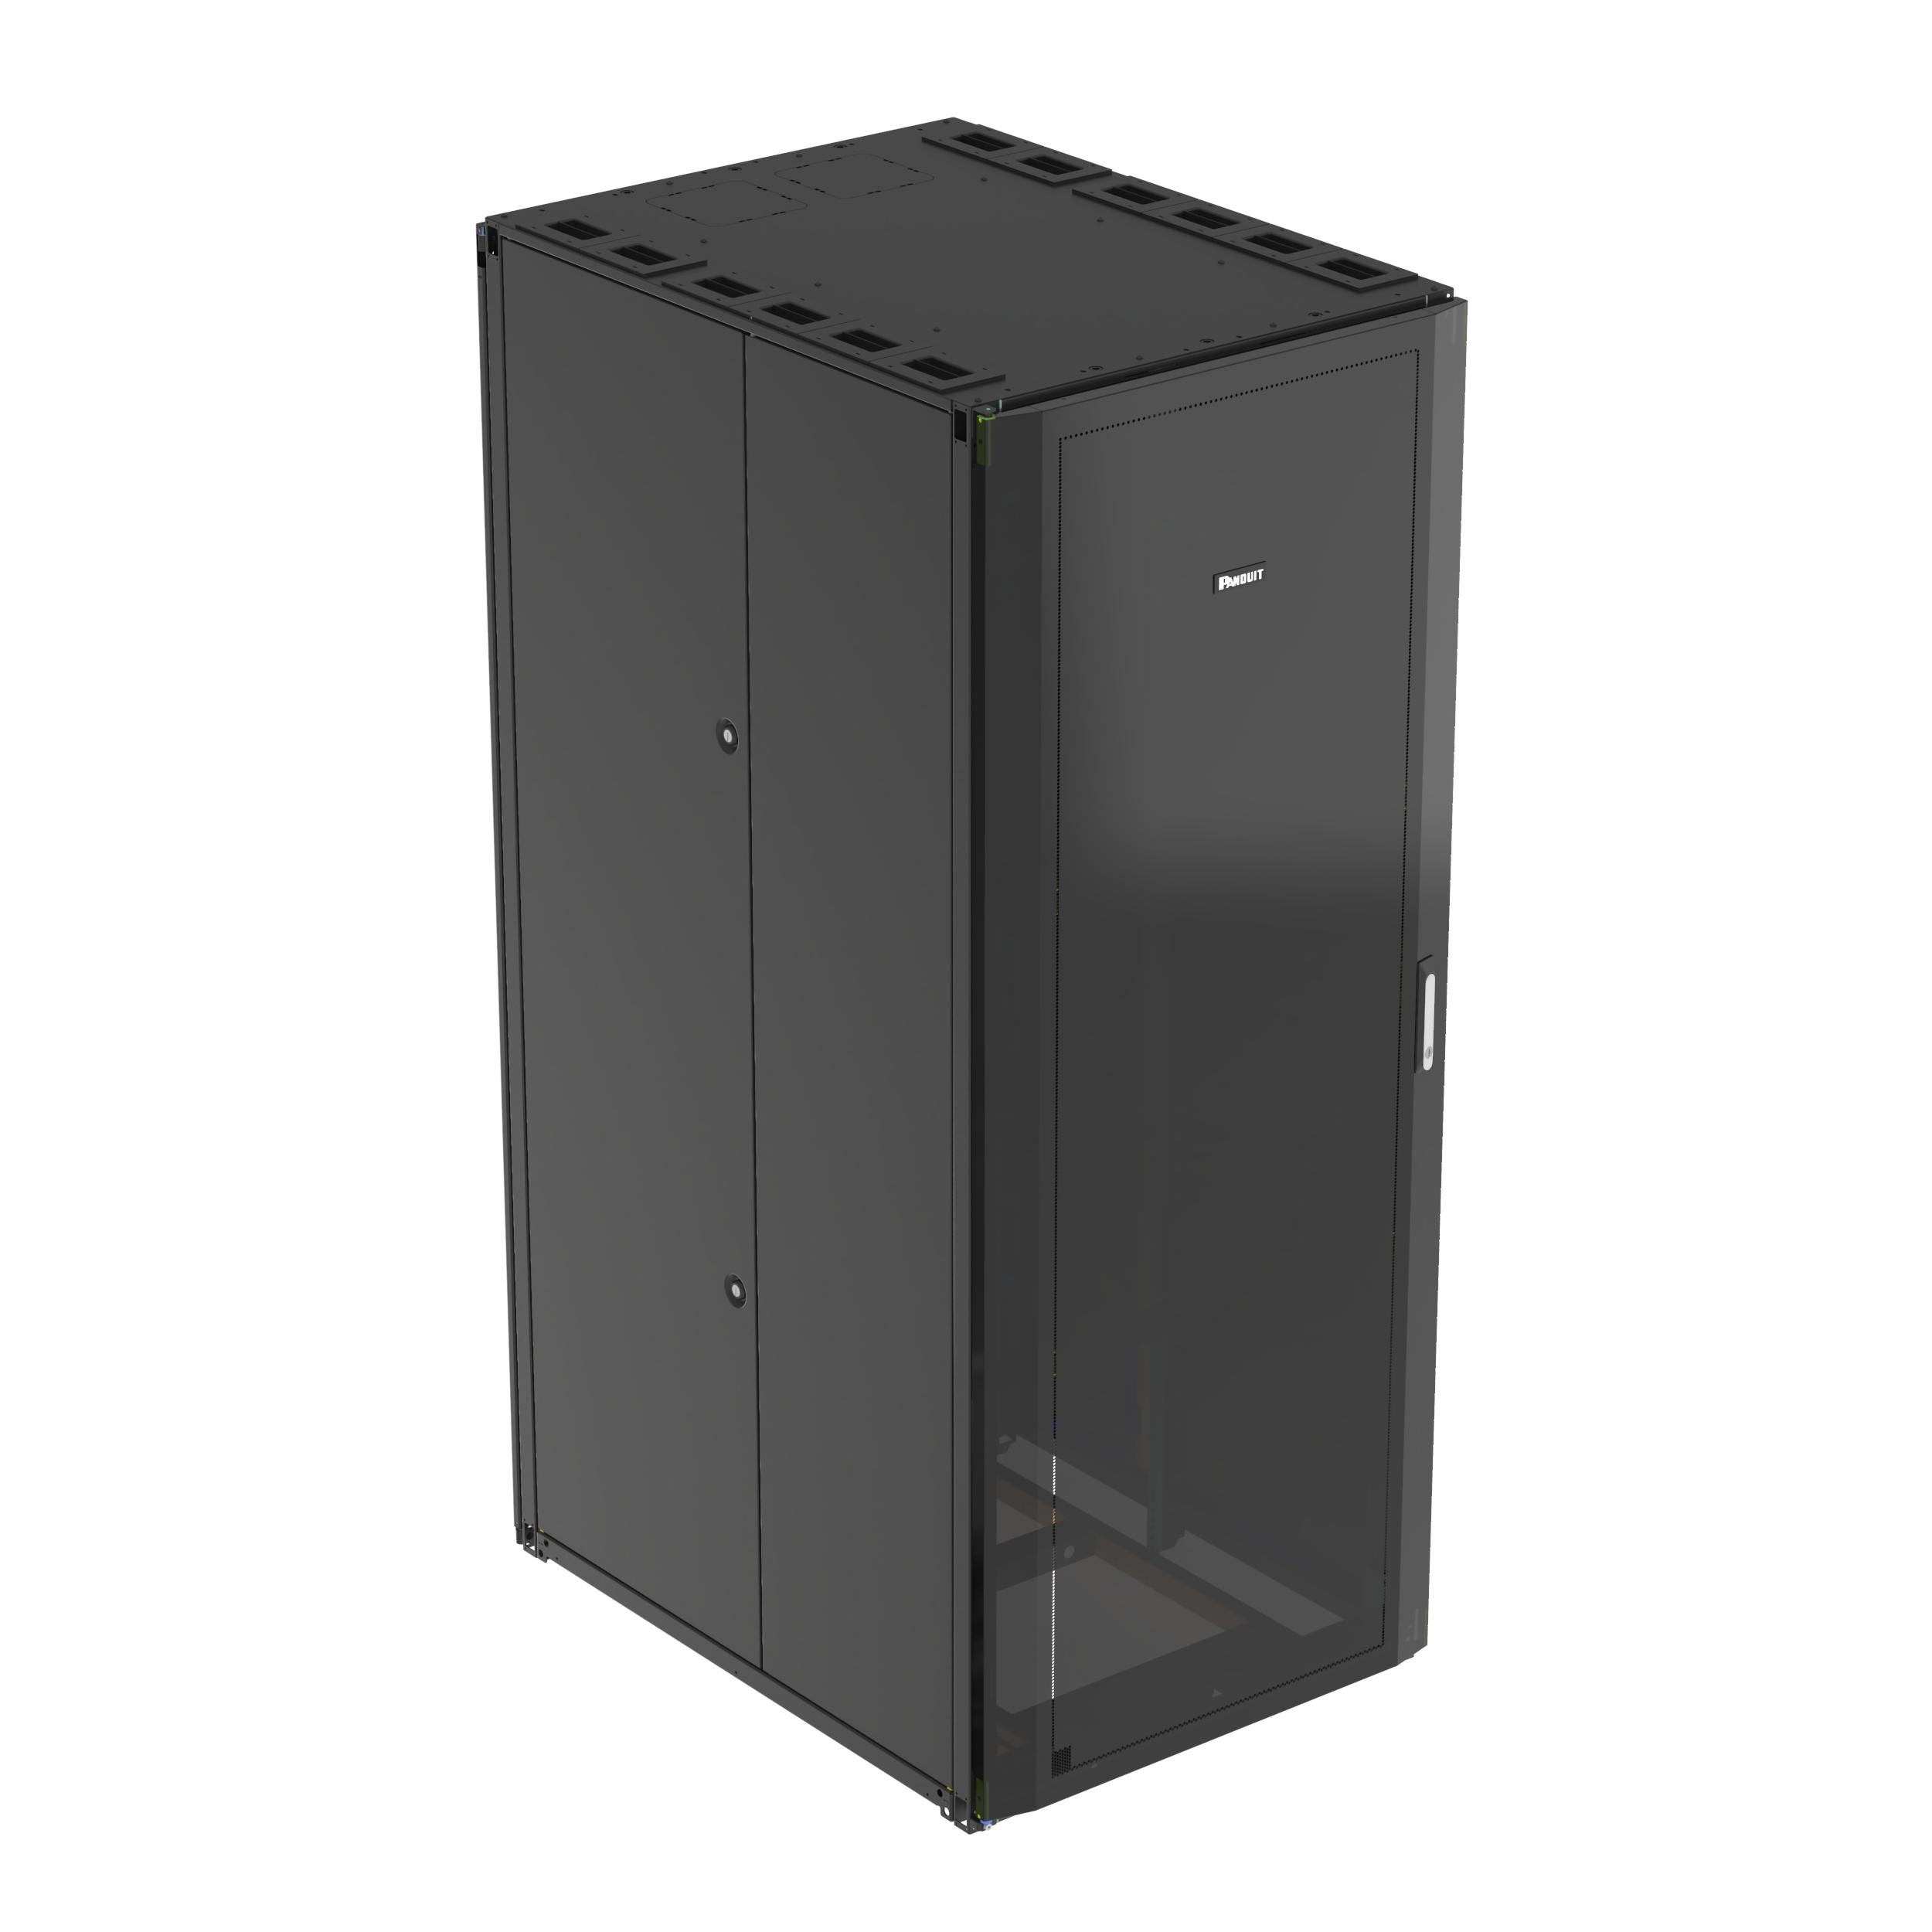 Panduit S8212BU Net-Access™ S-Type Cabinet